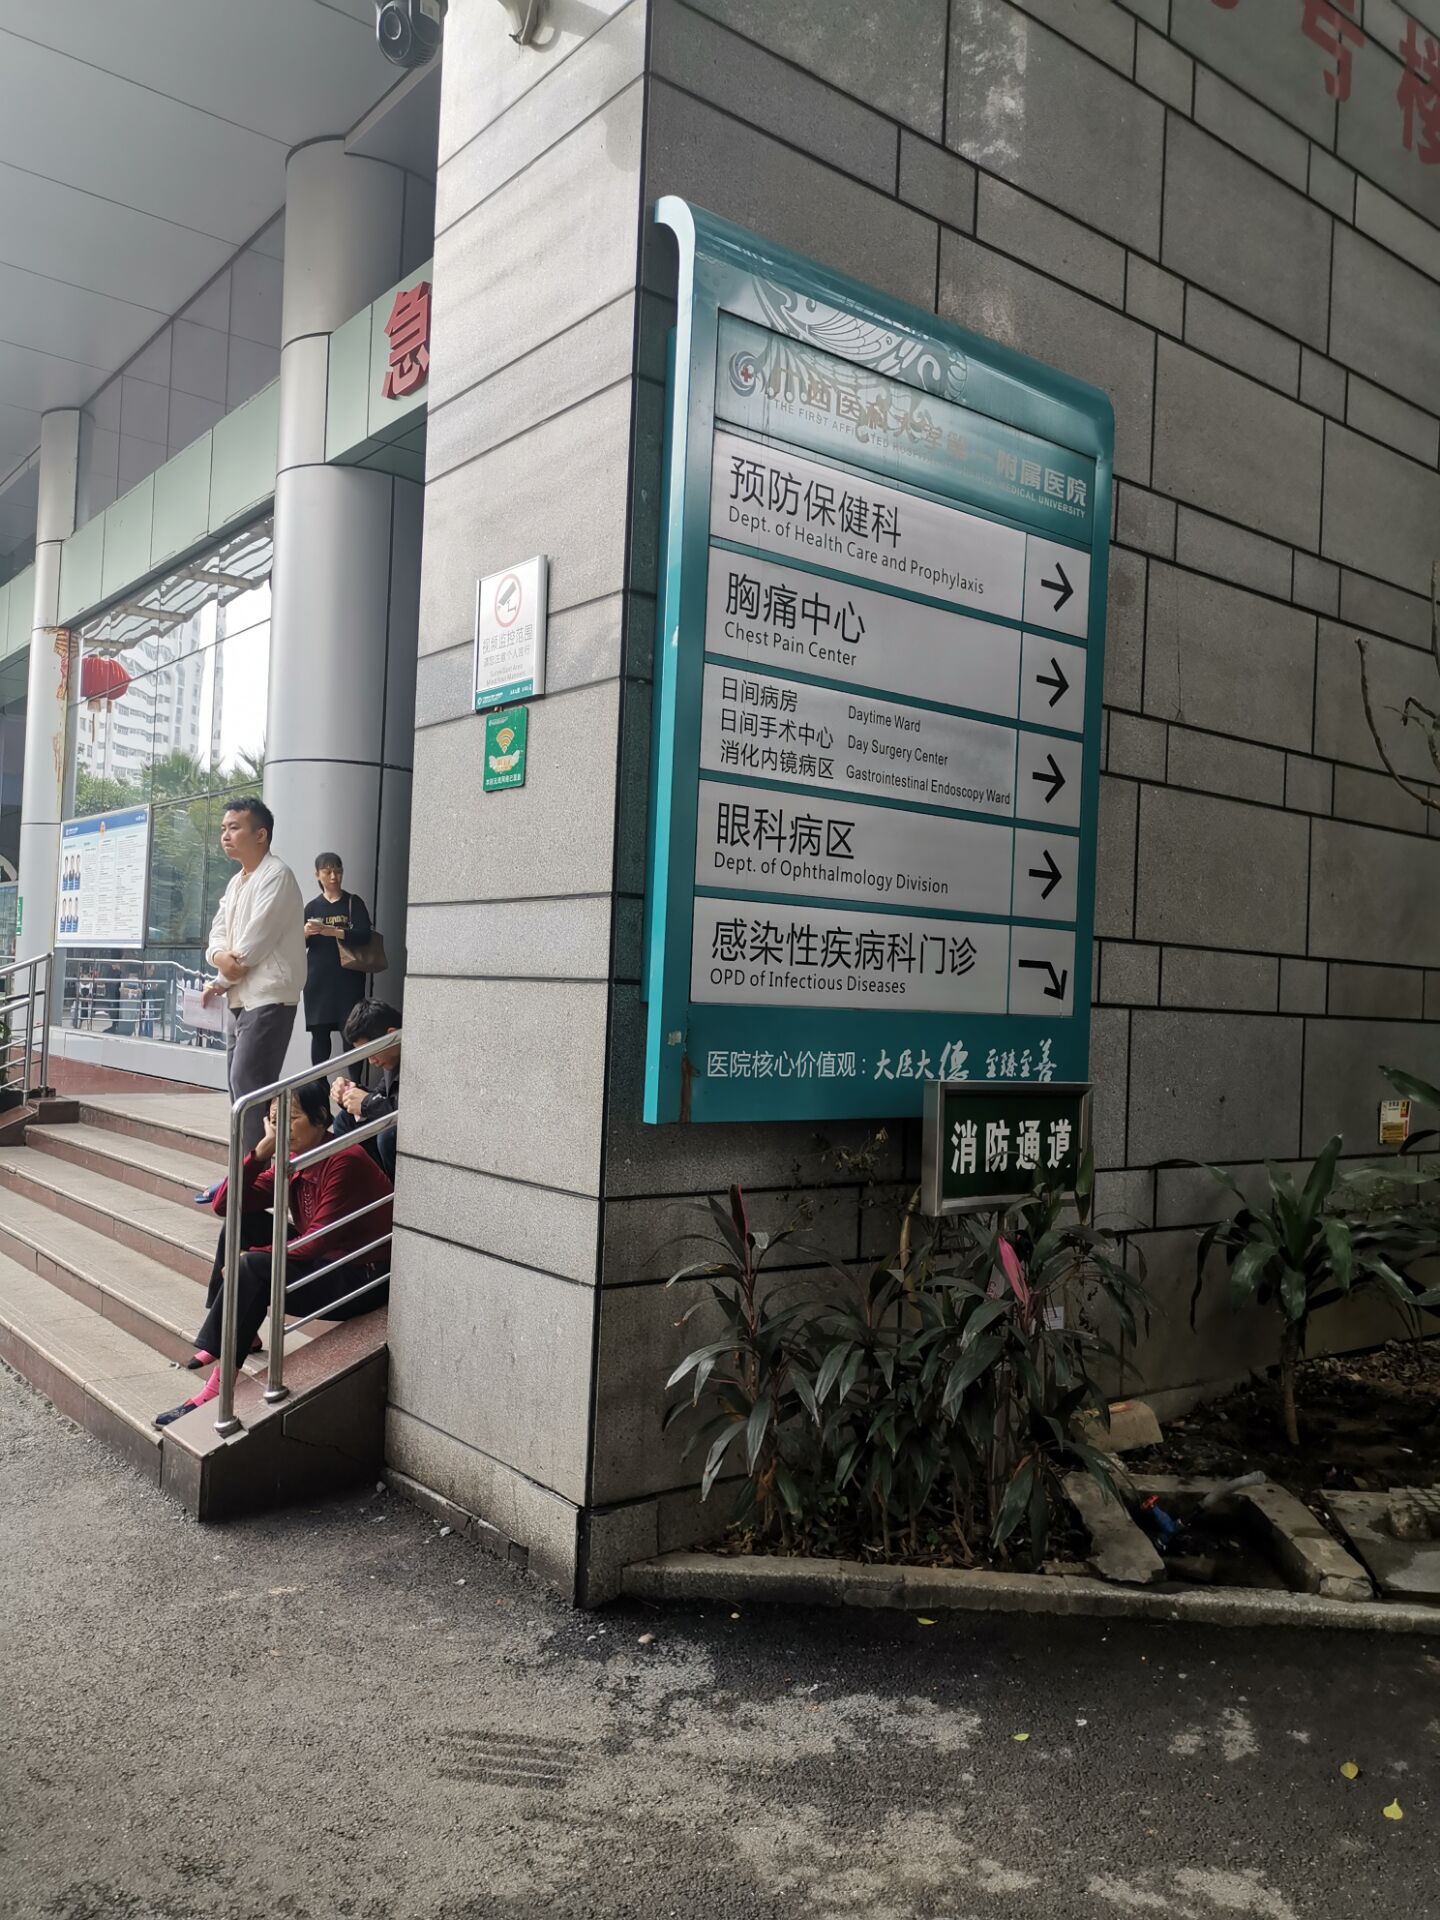 广西医科大学第一附属医院导视标识系统